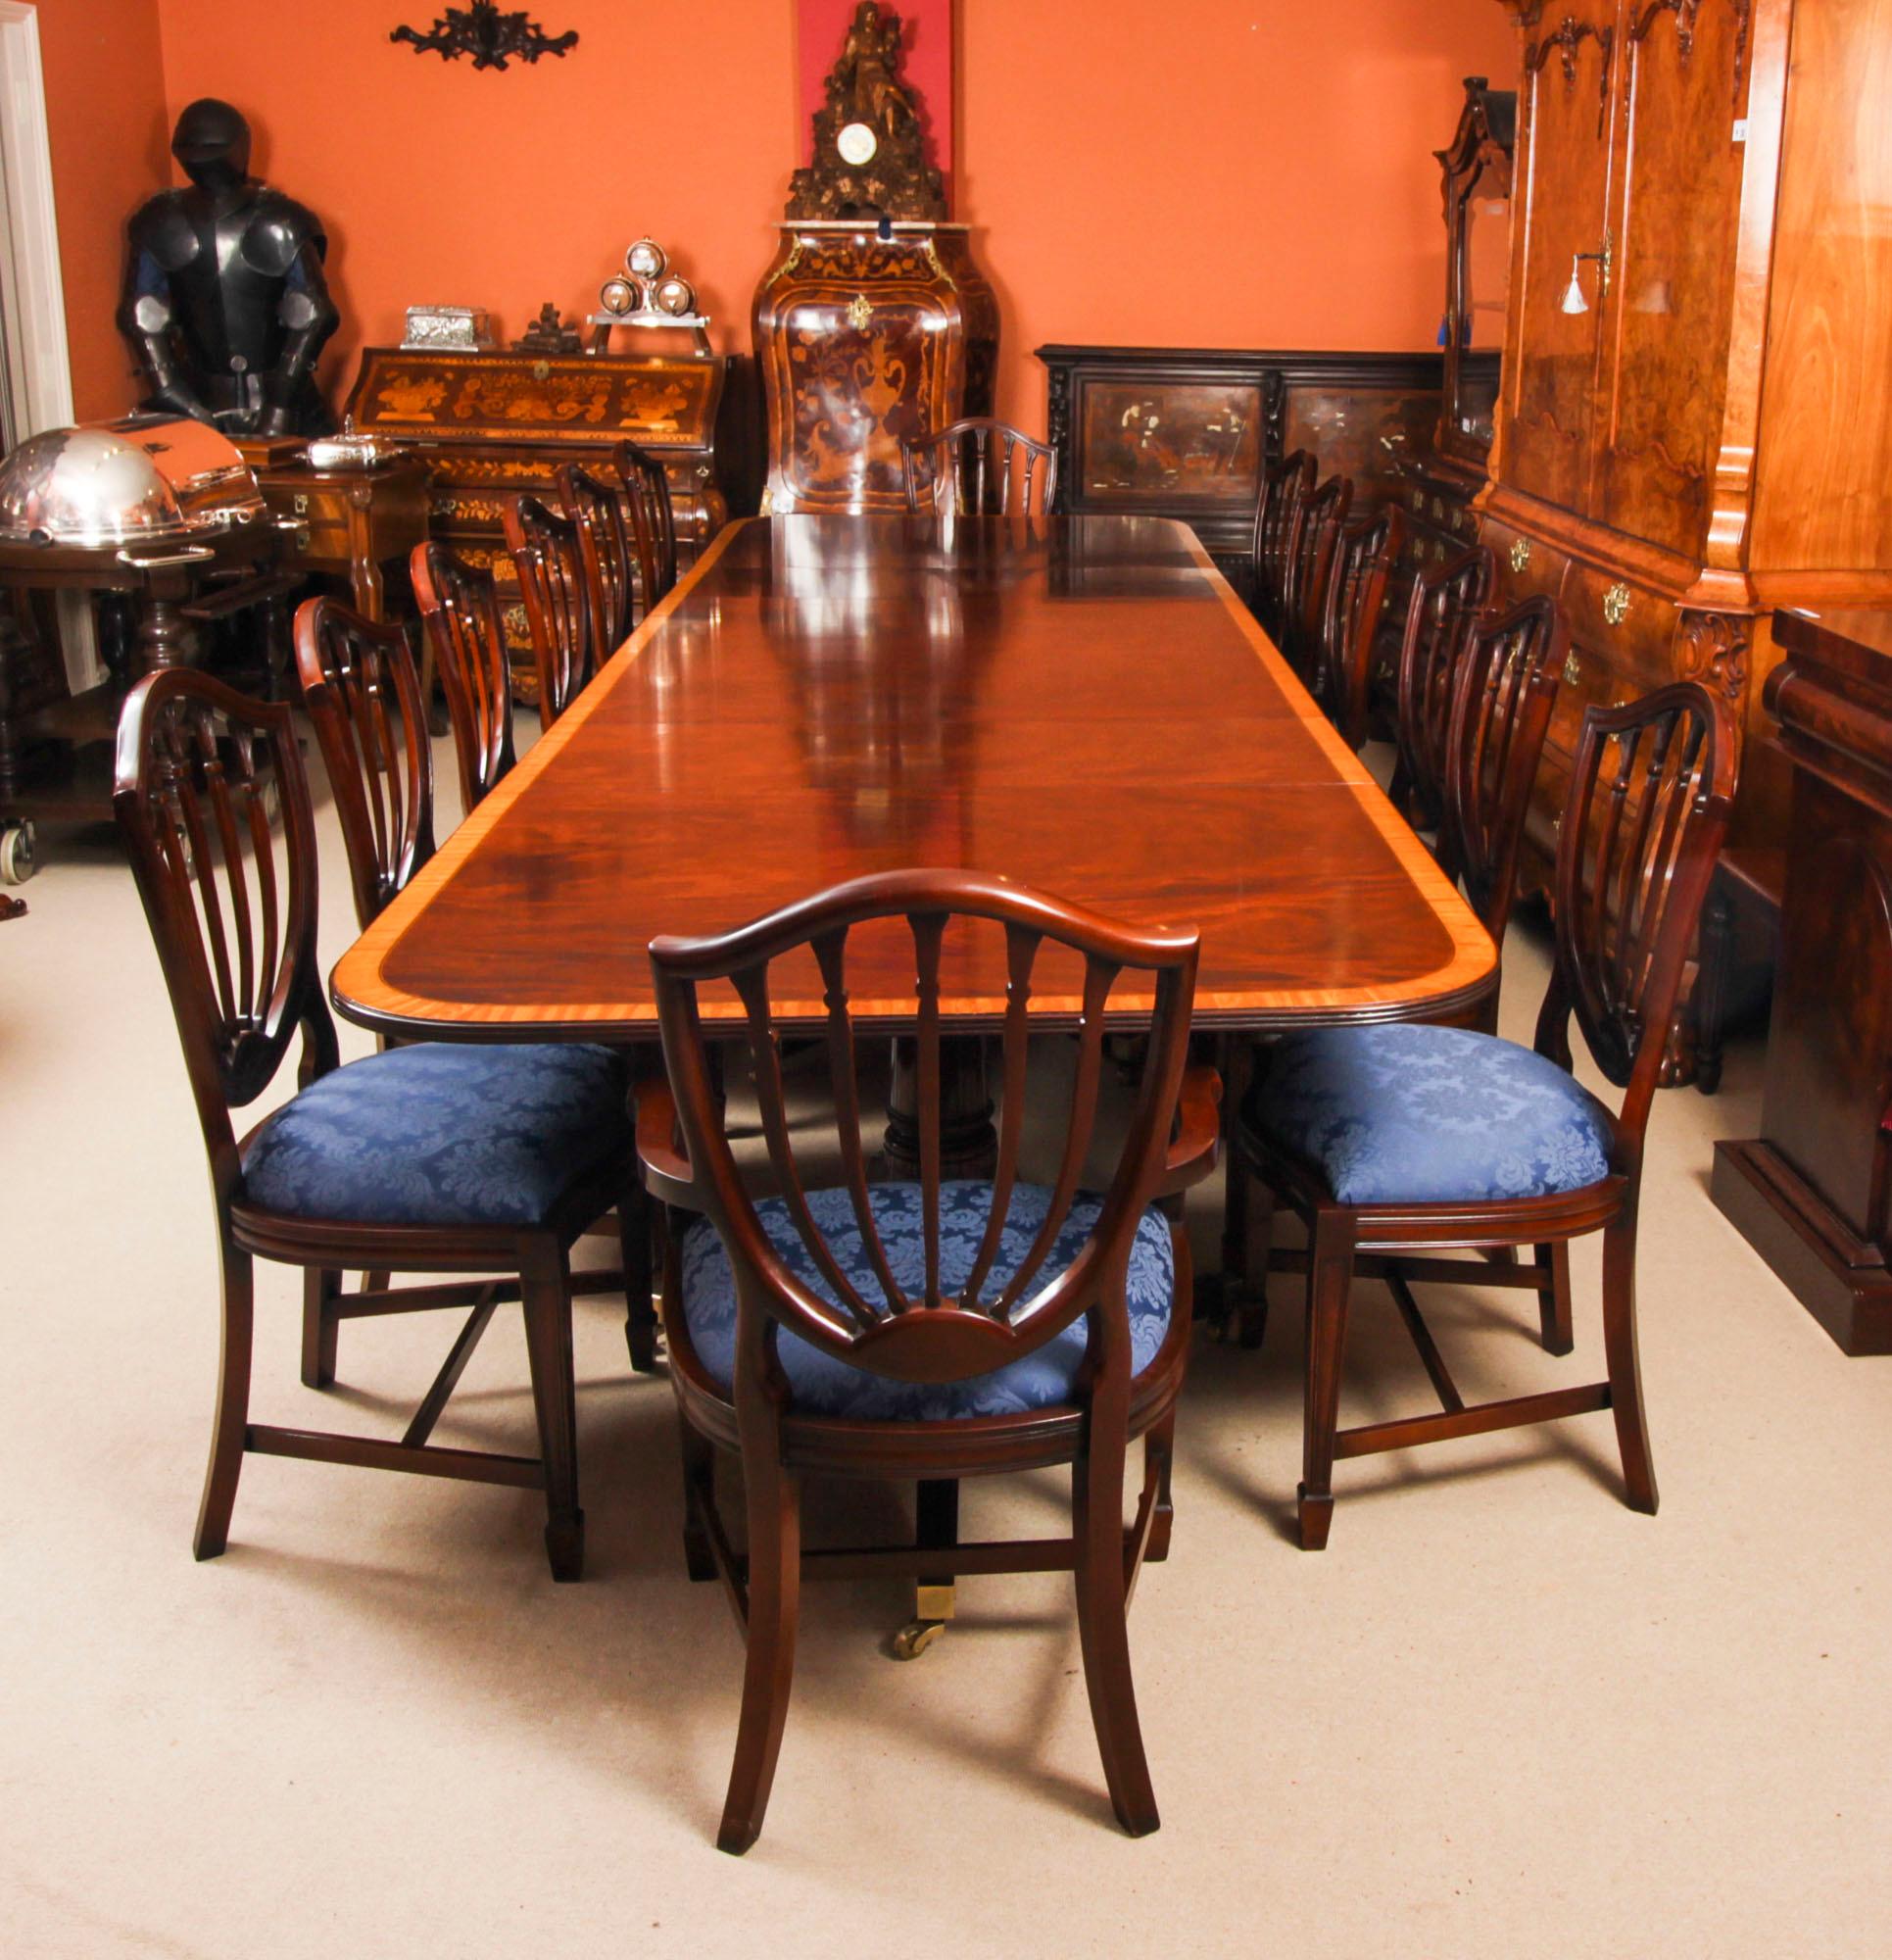 Voici un superbe ensemble de salle à manger comprenant une table de salle à manger Vintage Regency Revival de 13 pieds.  avec quatorze chaises de salle à manger Hepplewhite revival, datant de la seconde moitié du 20e siècle.

Le plateau de la table